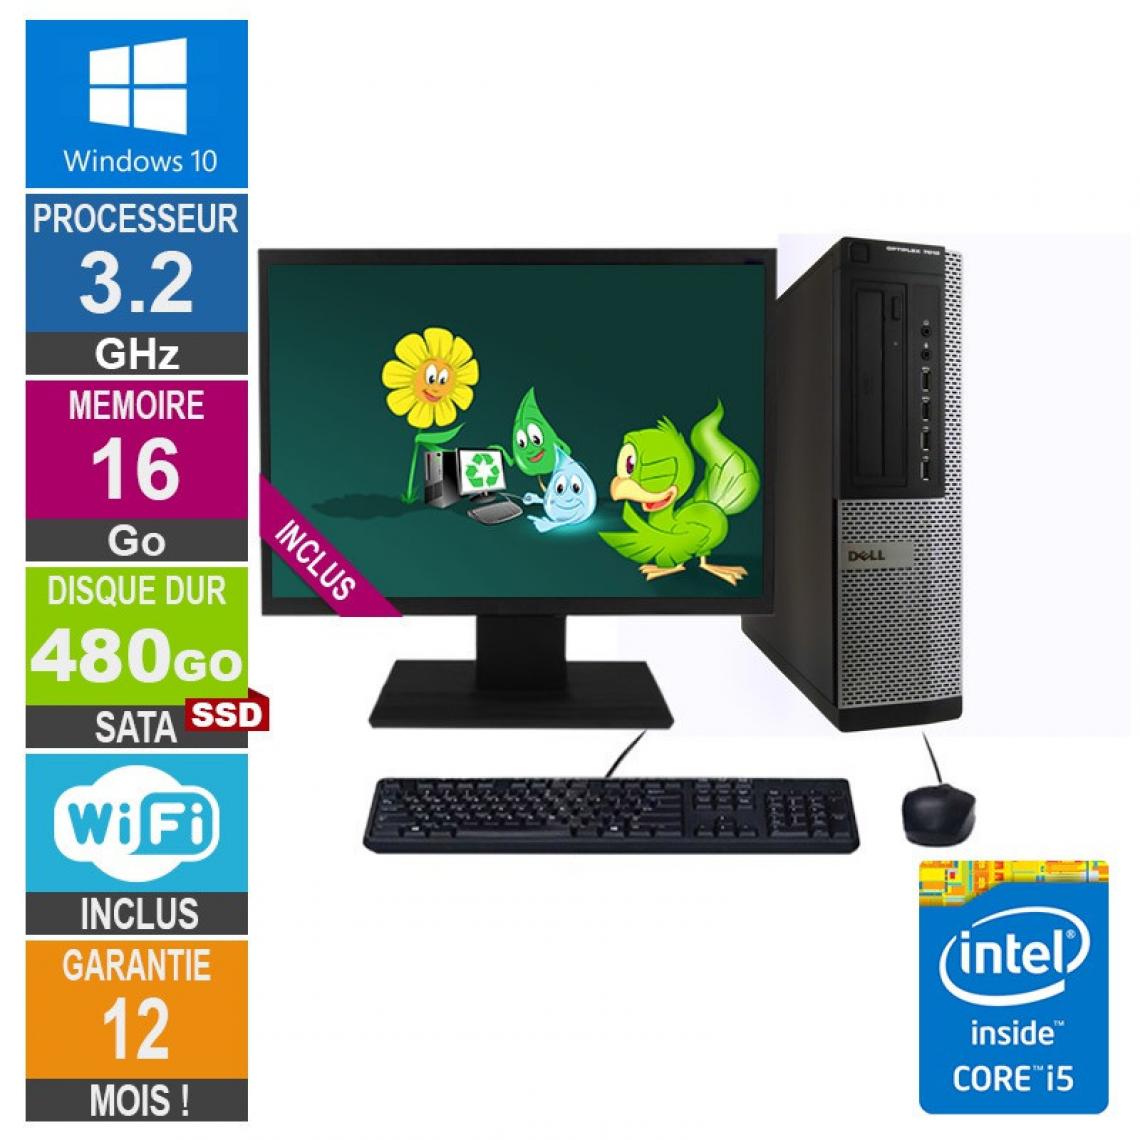 Dell - PC Dell Optiplex 7010 DT Core i5-3470 3.20GHz 16Go/480Go SSD Wifi W10 + Ecran 19 - PC Fixe